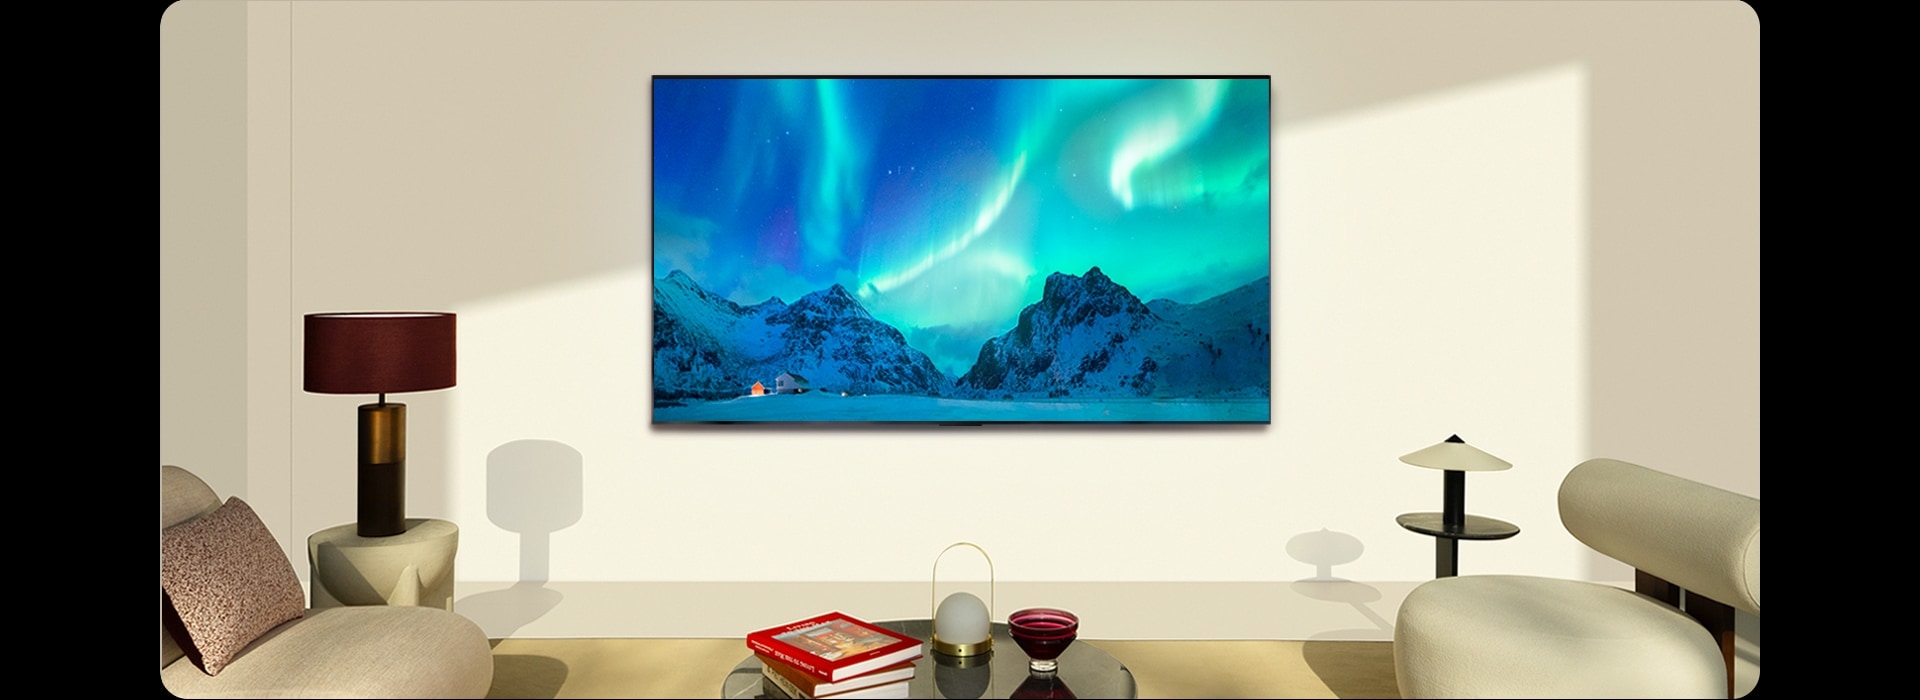 在白天，LG OLED 電視和 LG Soundbar 放置在現代生活空間中。顯示北極光的屏幕圖像具有理想的亮度水平。